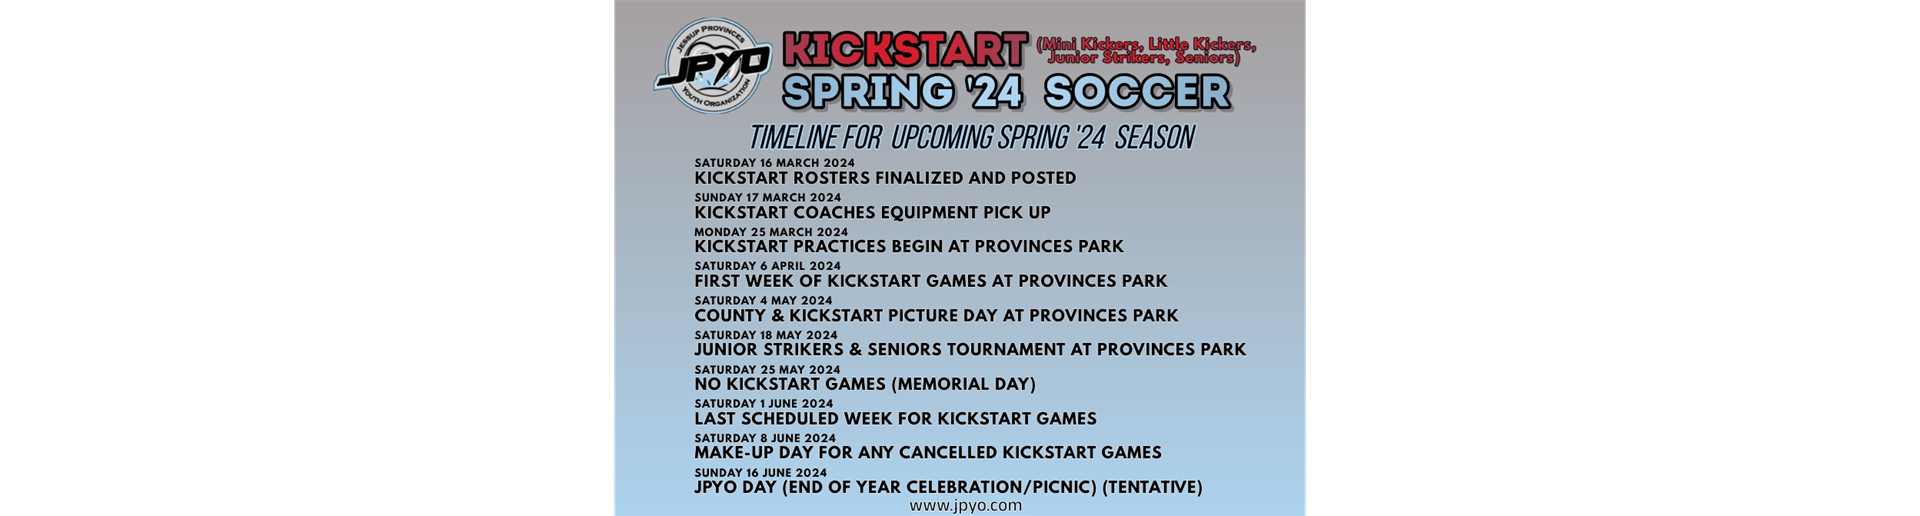 KickStart Spring '24 Timeline